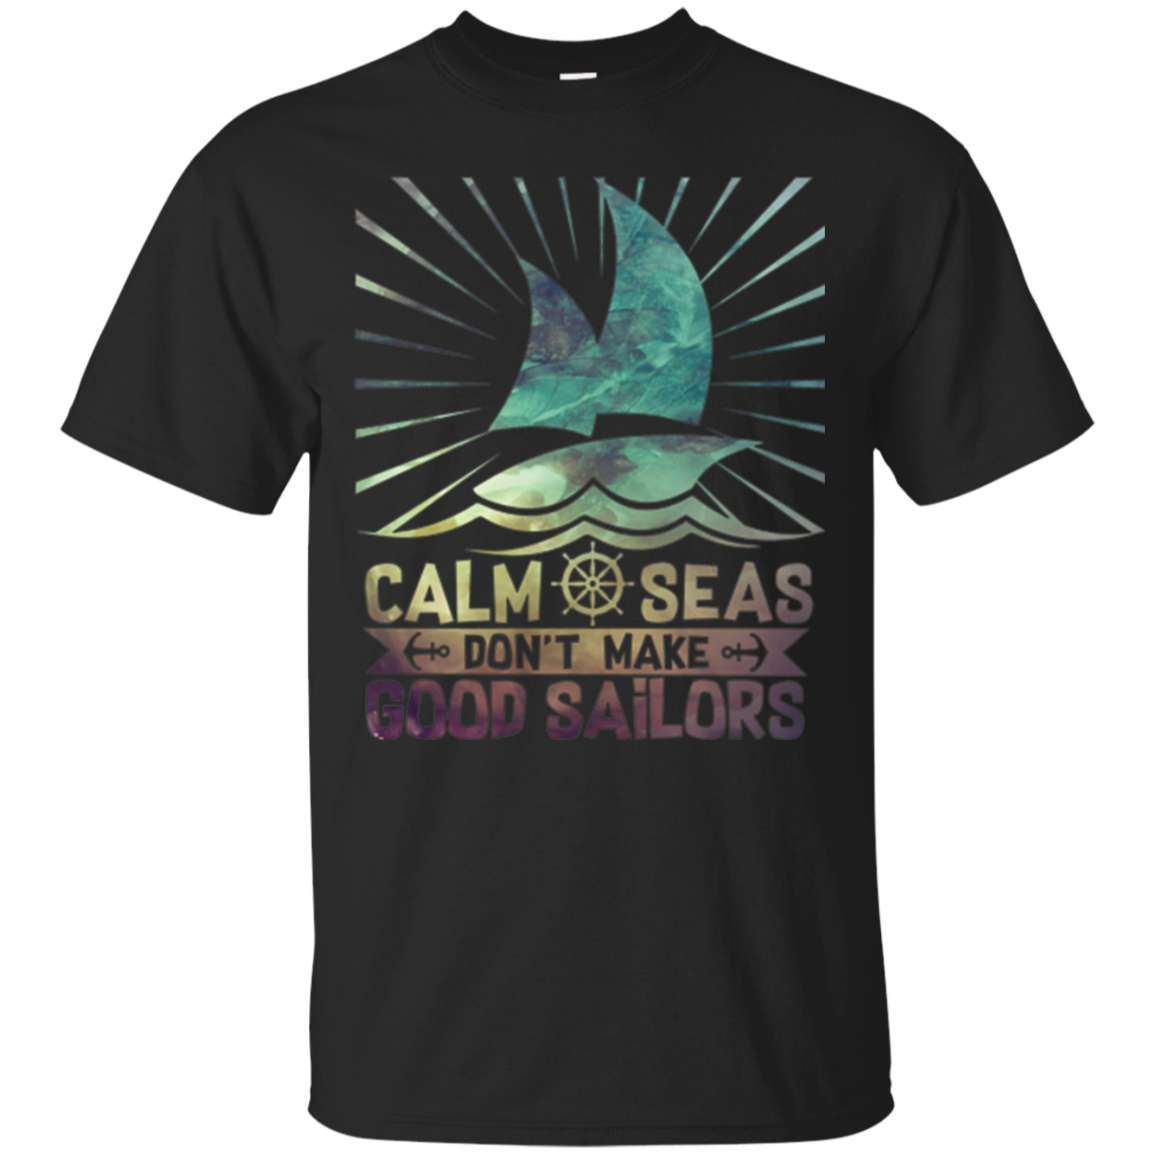 Classic Sailing T Shirt, Good Sailors.. Boat At Sea